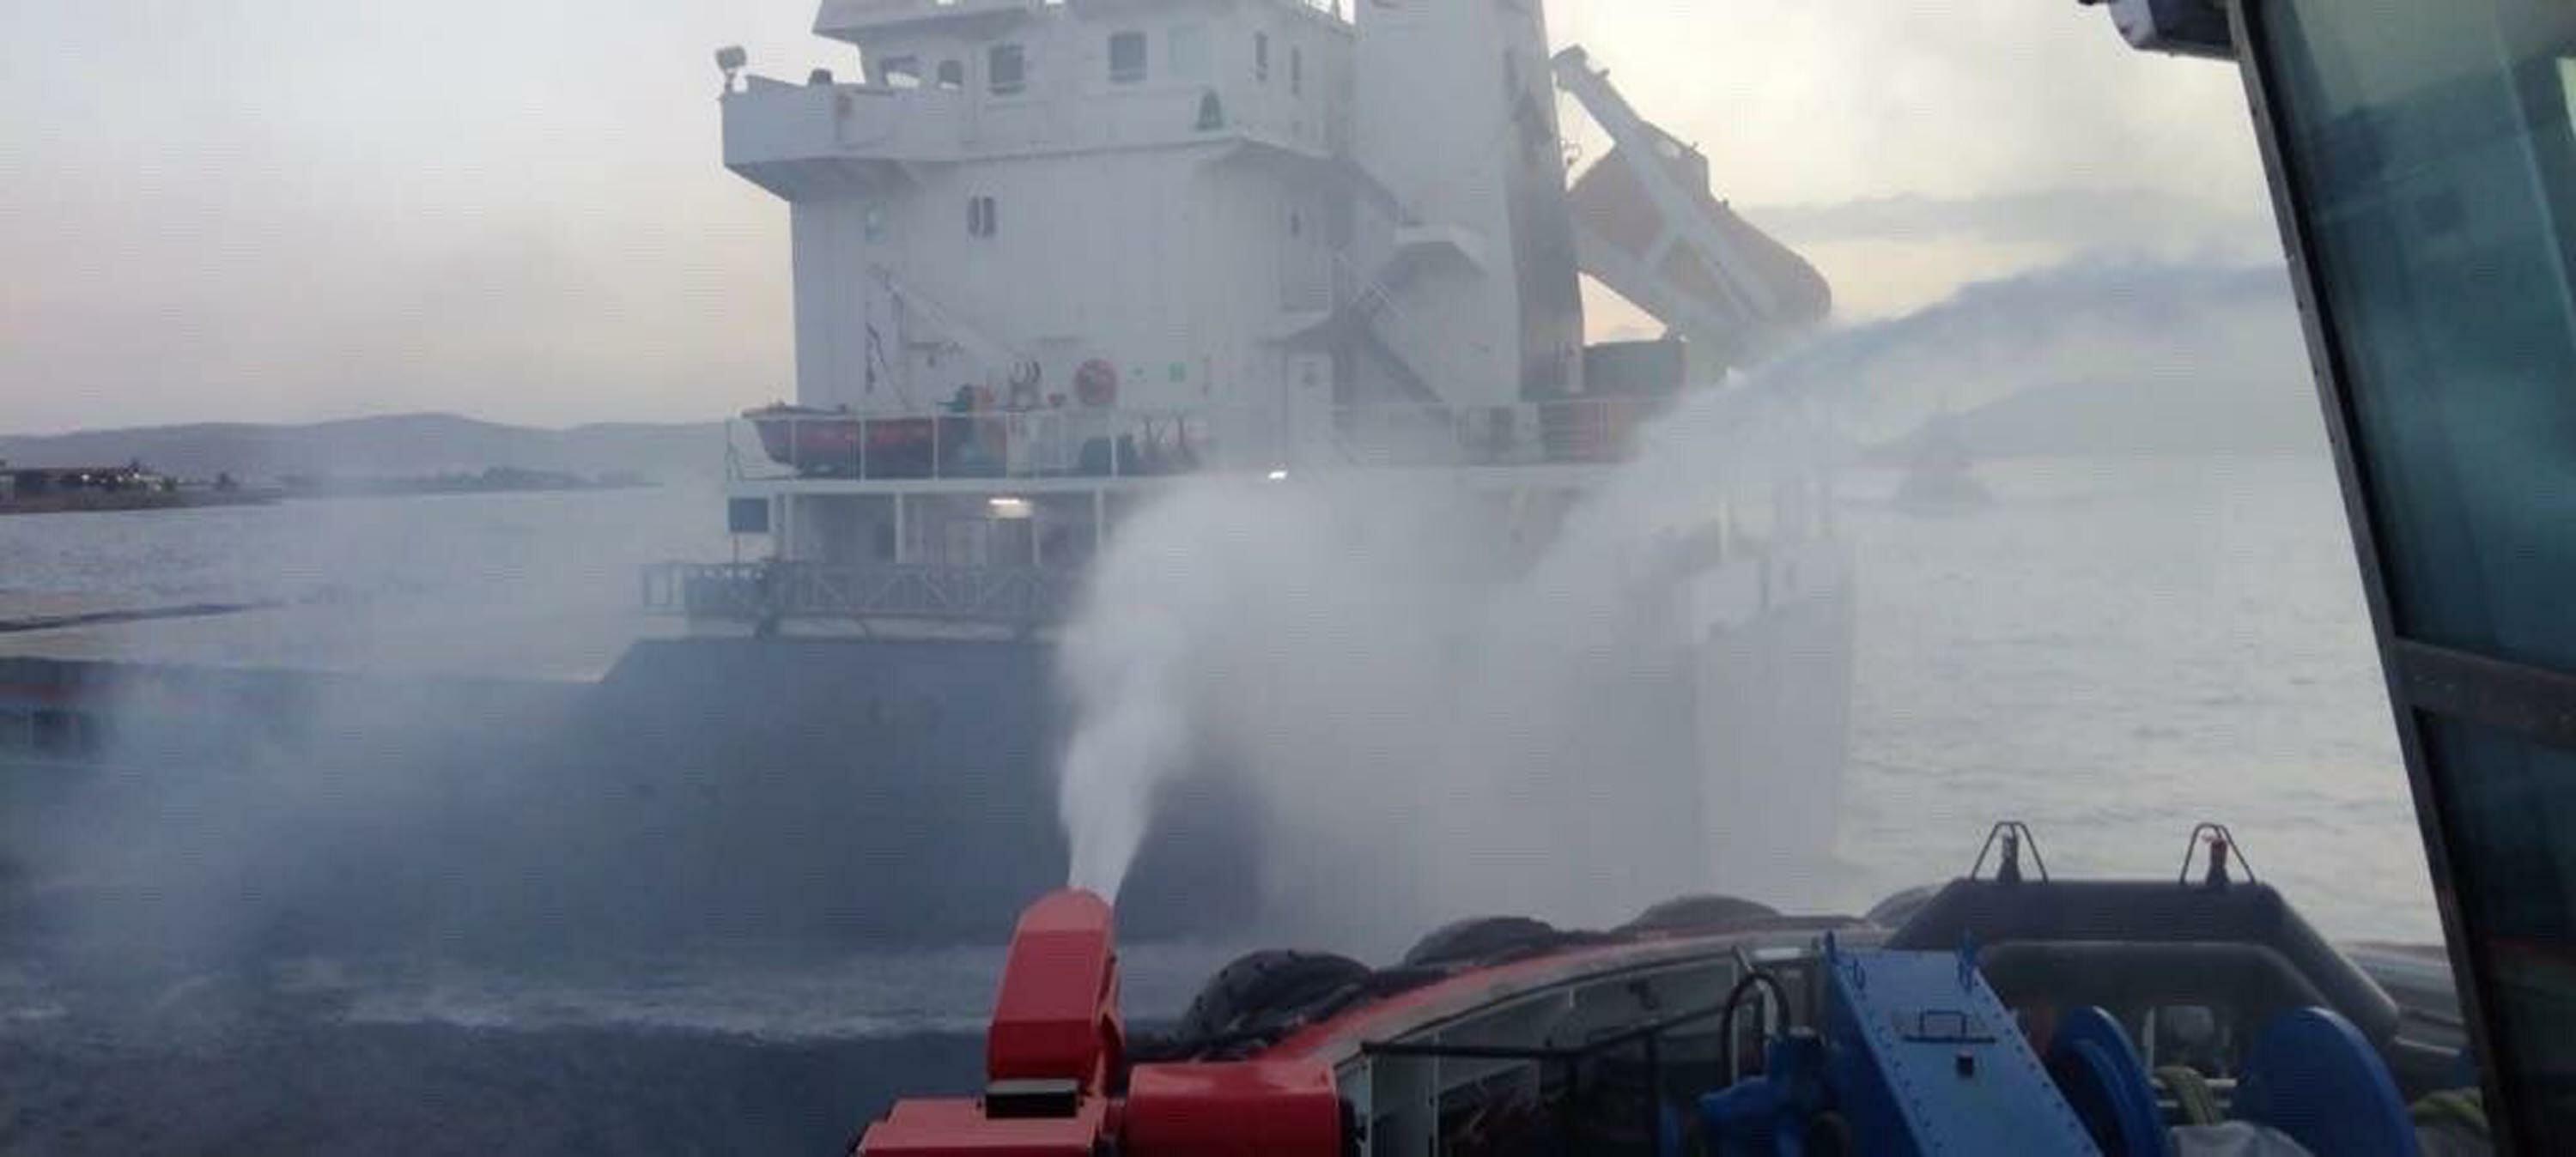 Çanakkale Boğazı'nda 107 metre uzunluğundaki kuru yük gemisinde yangın çıktı